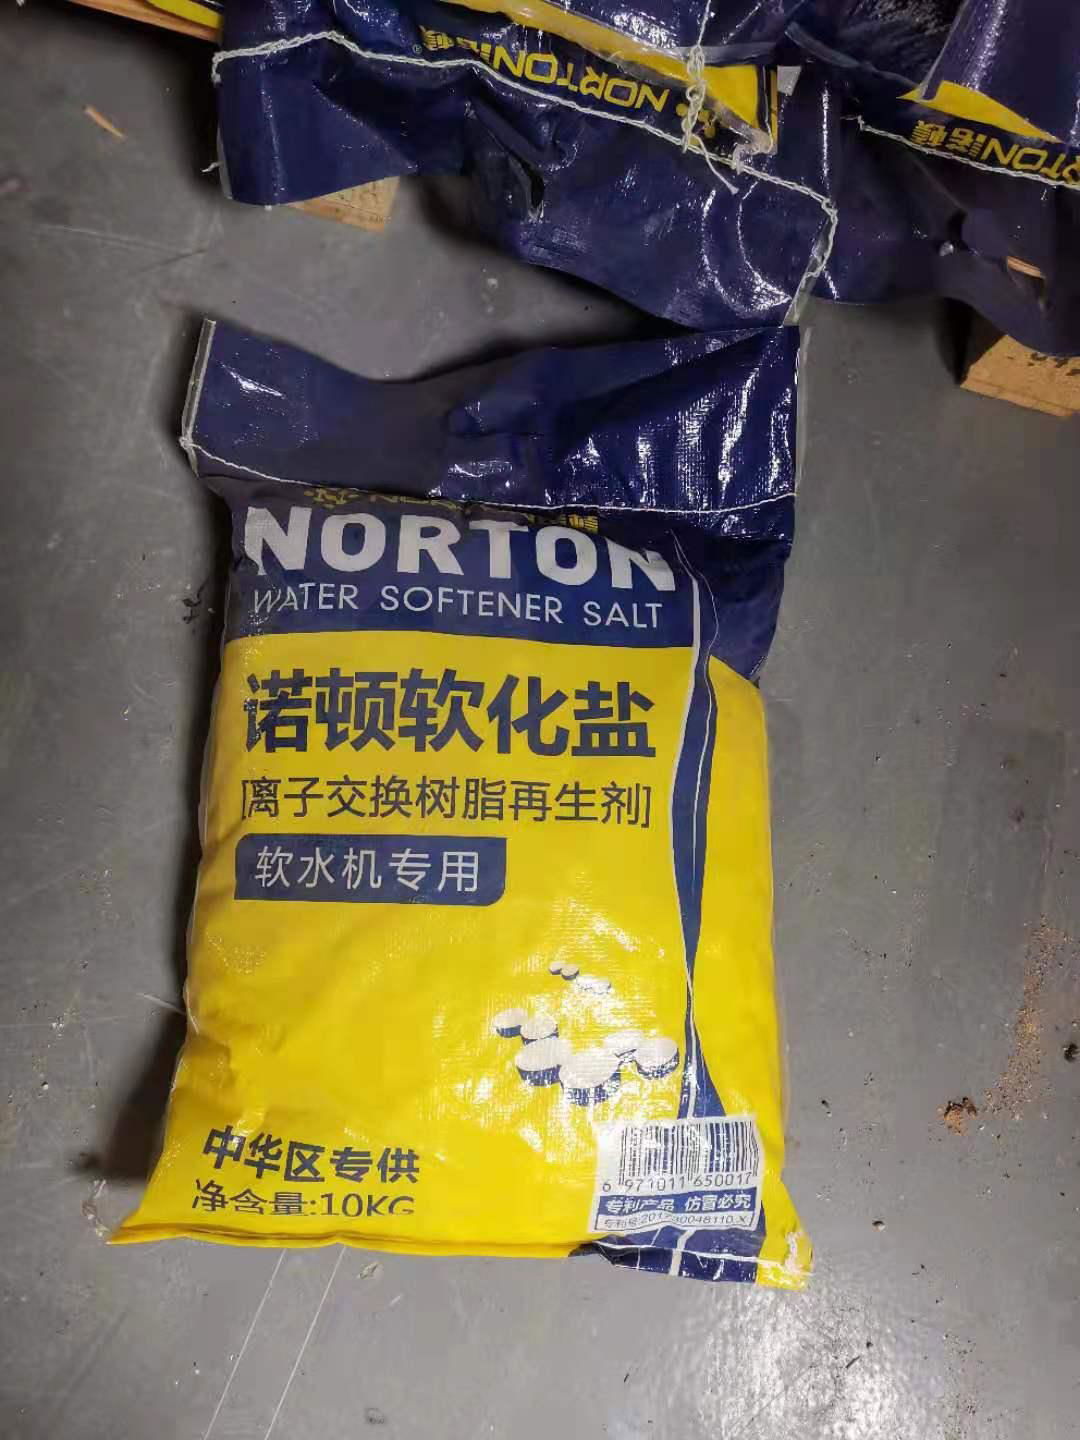 Norton softened salt  Ion exchange resin regenerant  for water softener